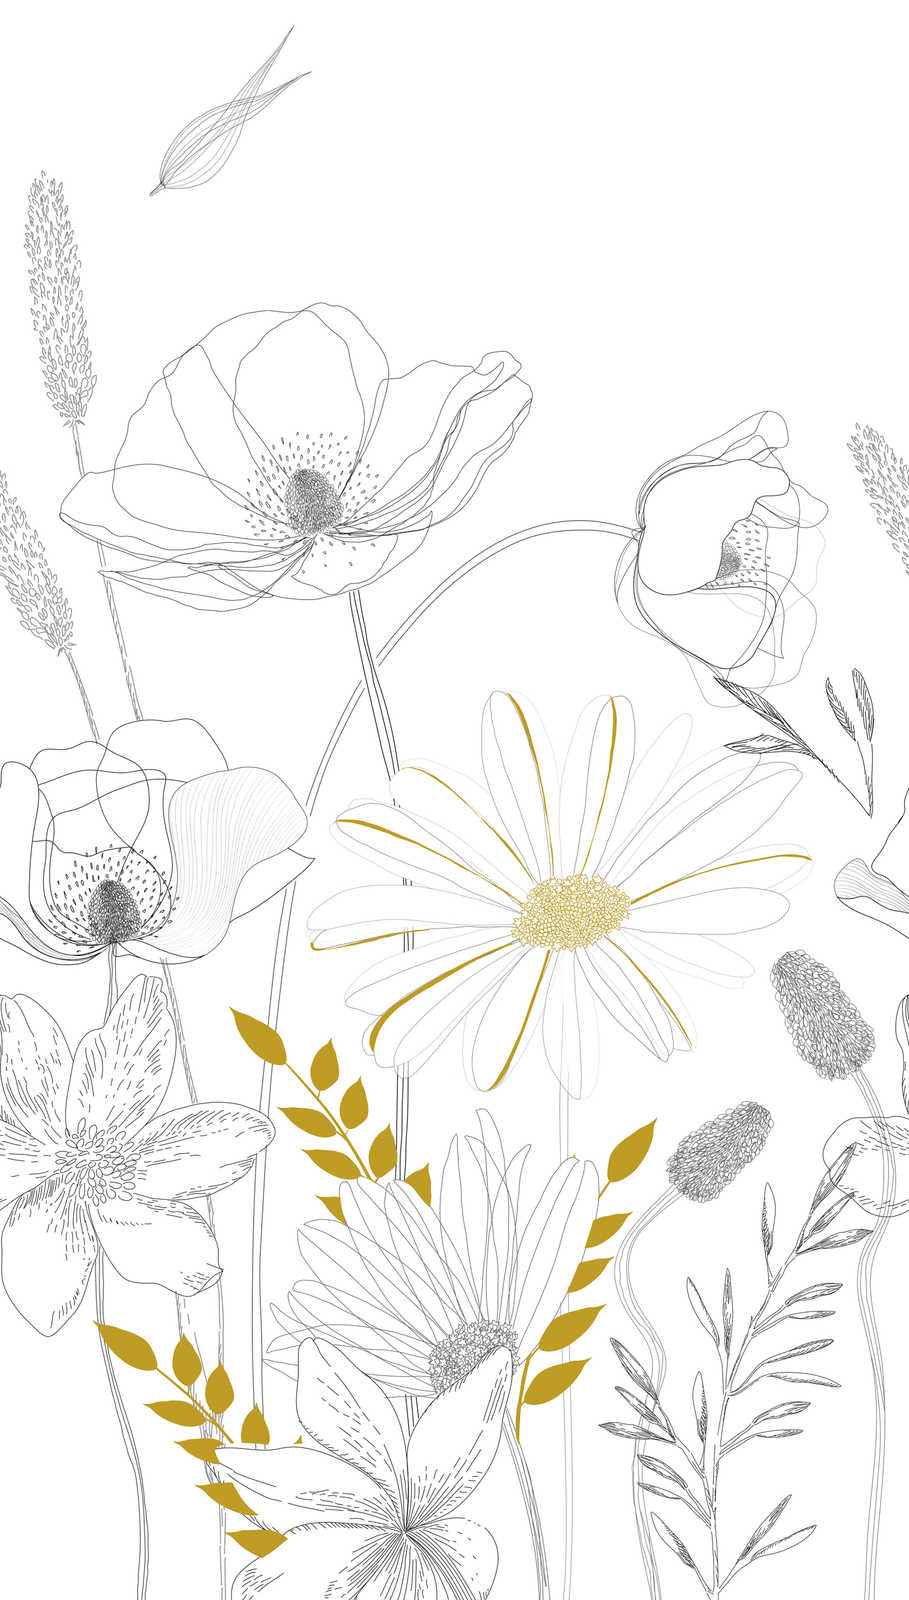             Papel Pintado con Motivos Florales Dibujados y Acentos de Color - Blanco, Negro, Amarillo
        